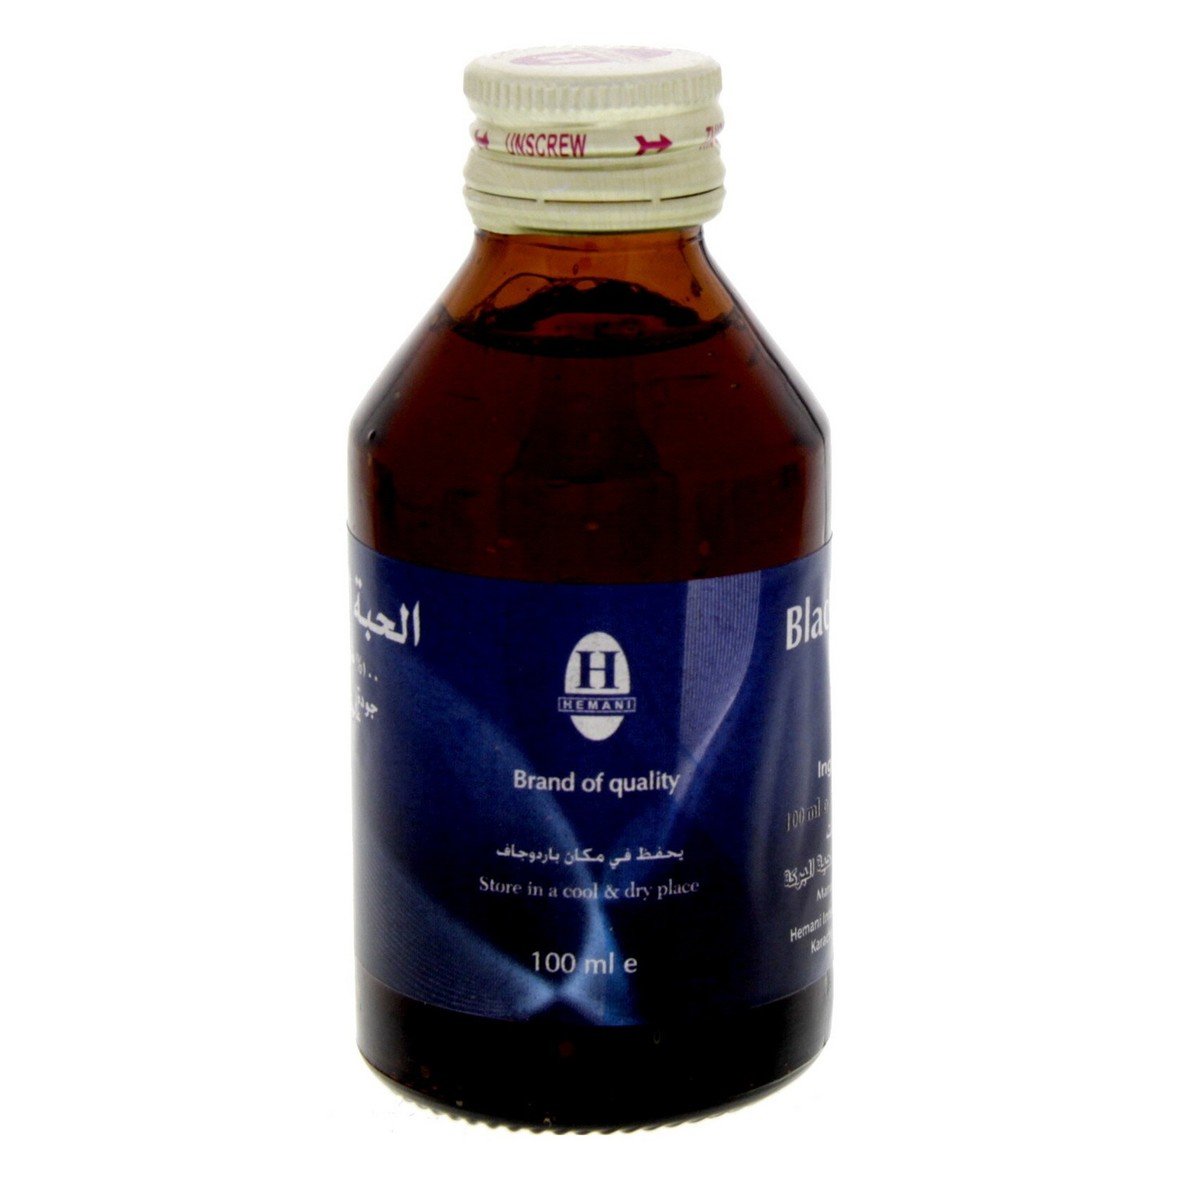 Hemani Black Seed Oil 100 ml